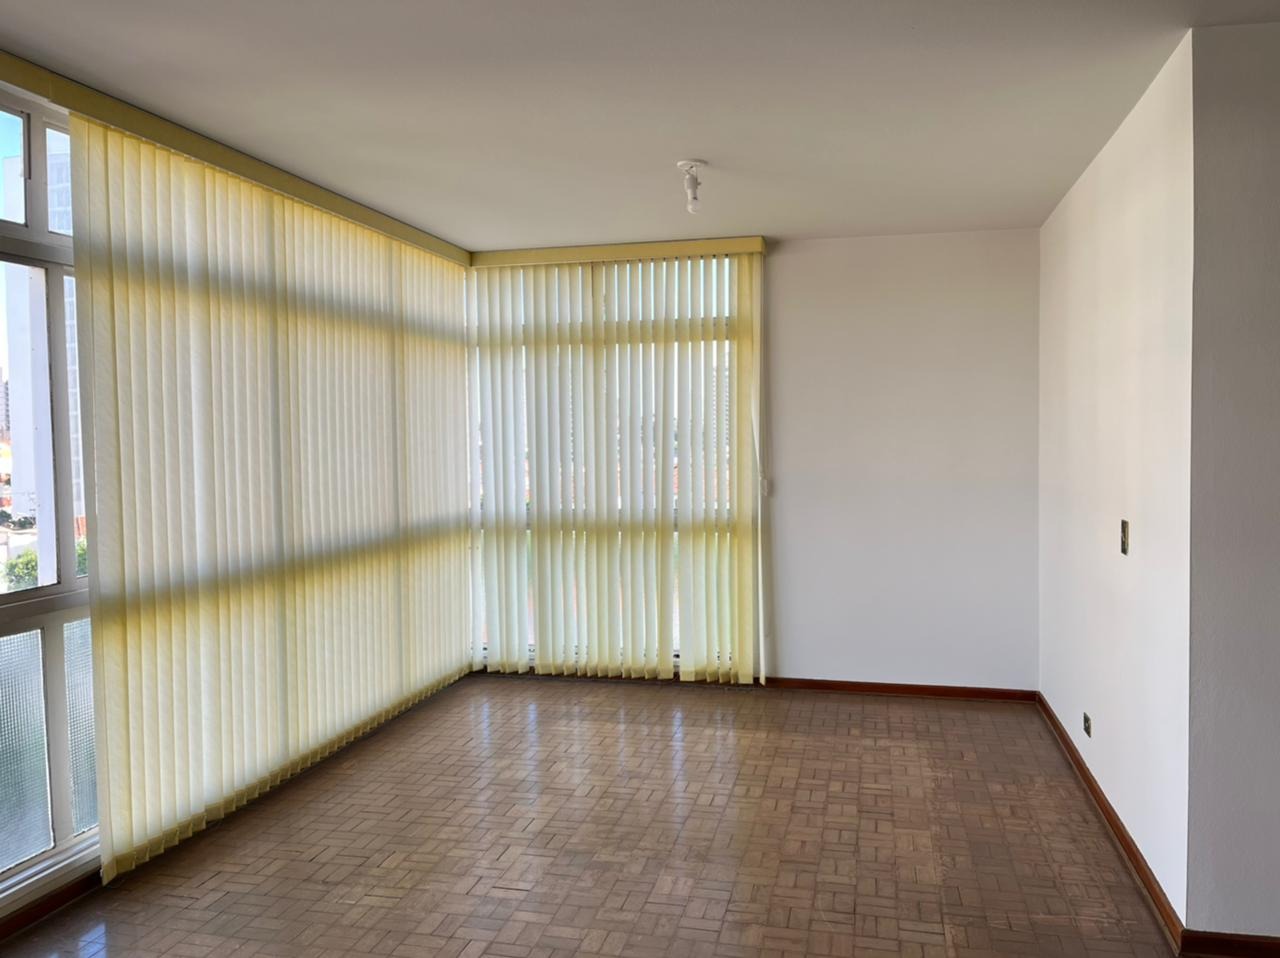 Apartamento à venda, 3 quartos, 1 vaga, no bairro Centro em Piracicaba - SP